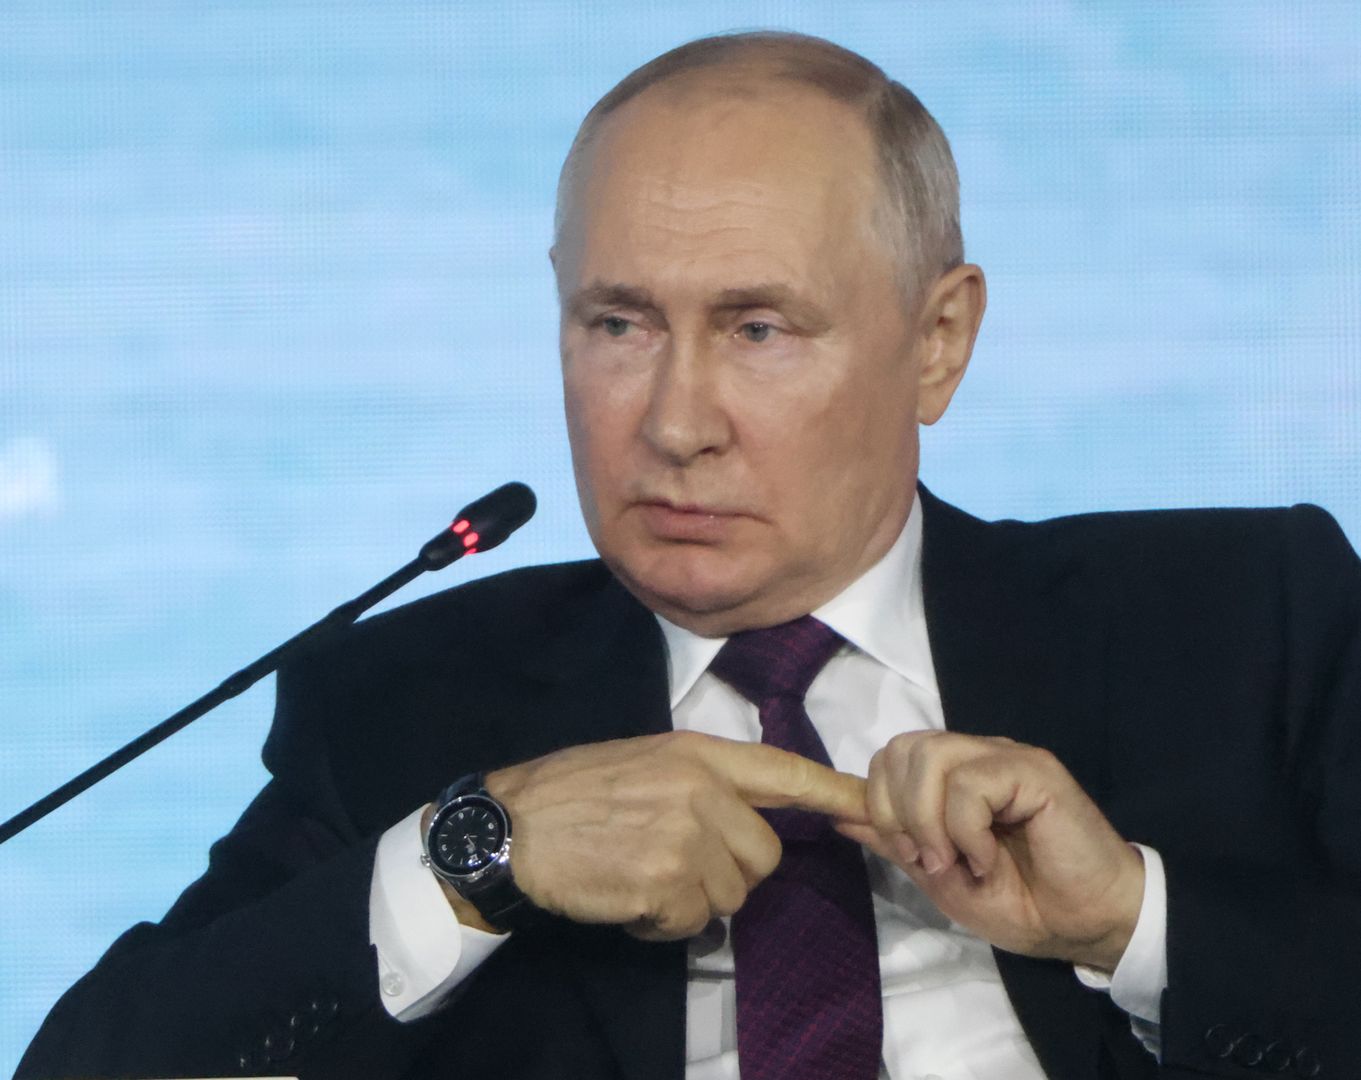 Prywatne plaże Putina. Zbiegły ochroniarz ujawnia, co się tam dzieje